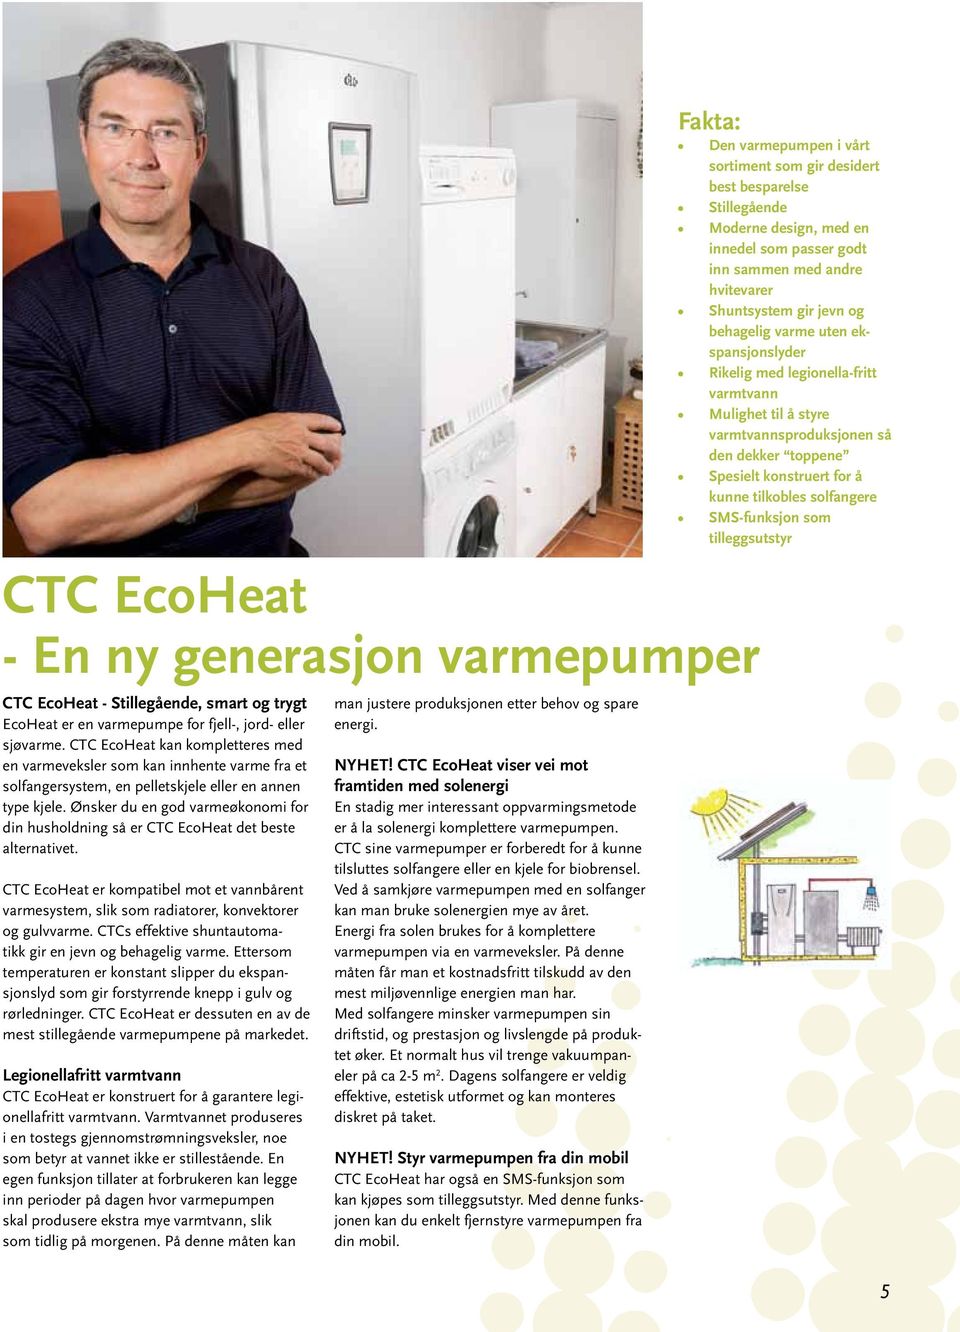 Ønsker du en god varmeøkonomi for din husholdning så er CTC EcoHeat det beste alternativet. CTC EcoHeat er kompatibel mot et vannbårent varmesystem, slik som radiatorer, konvektorer og gulvvarme.